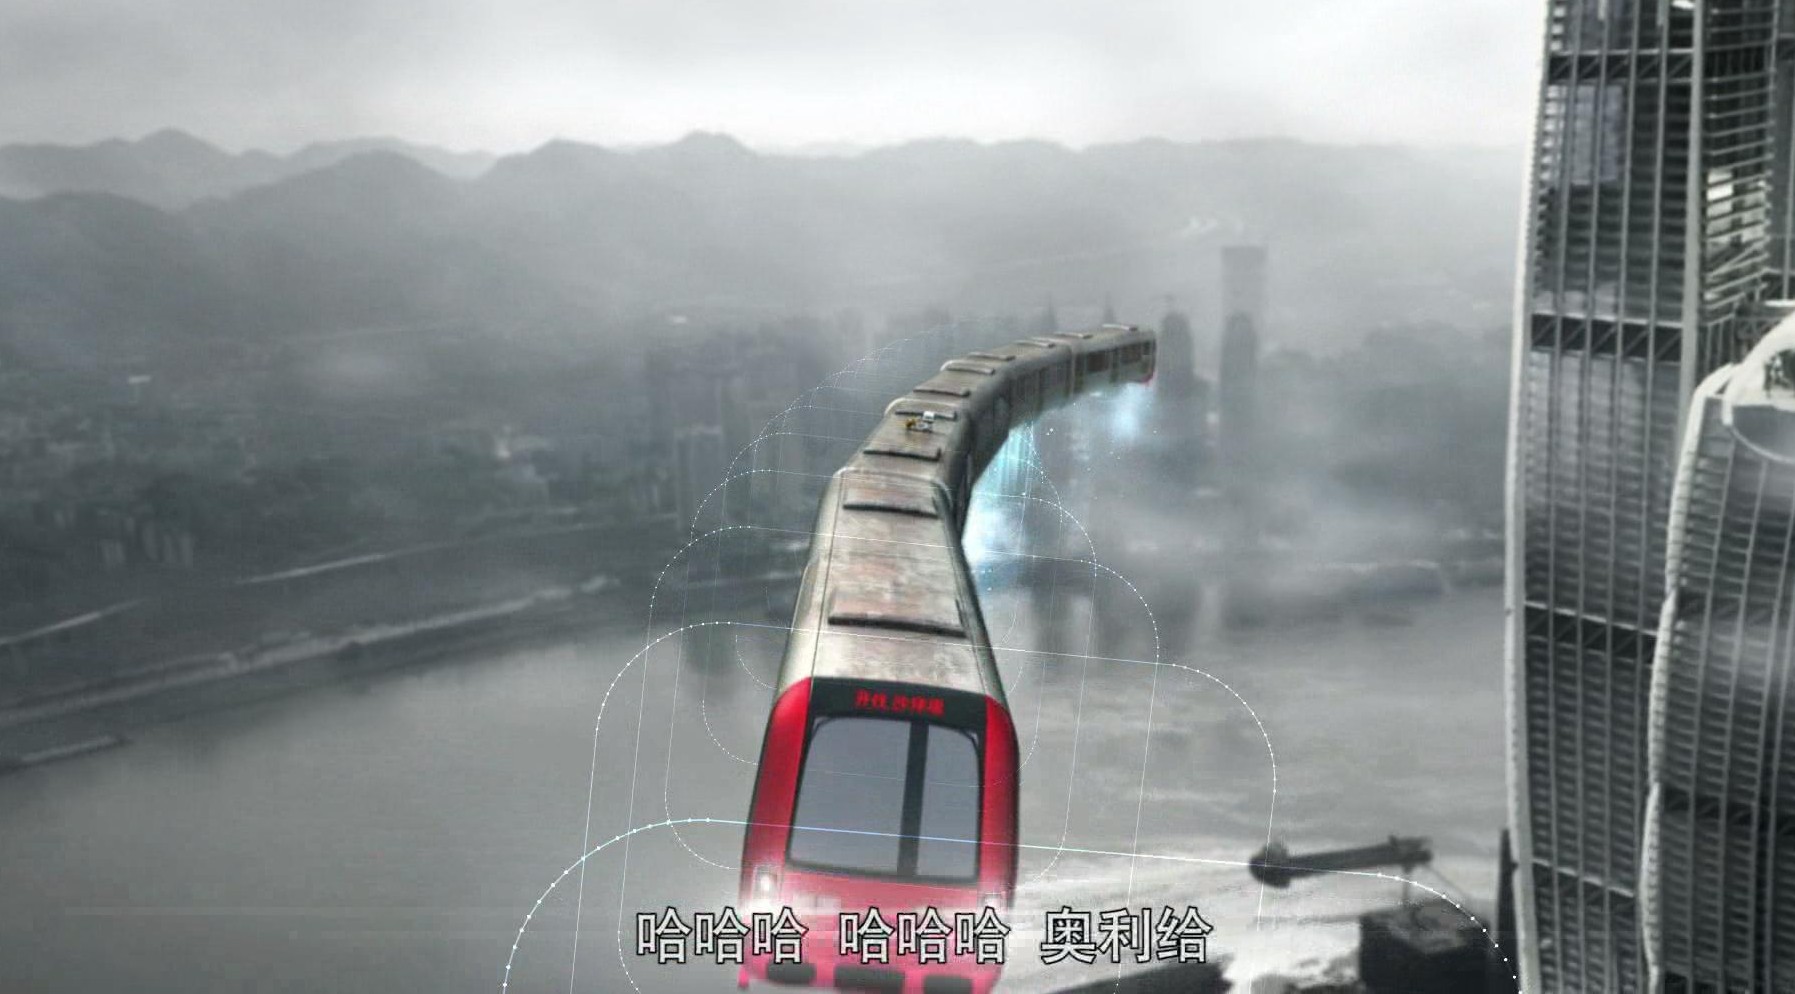 行星发动机顶上建造地铁站  重庆地铁1号线再度升级  它飞起来了 